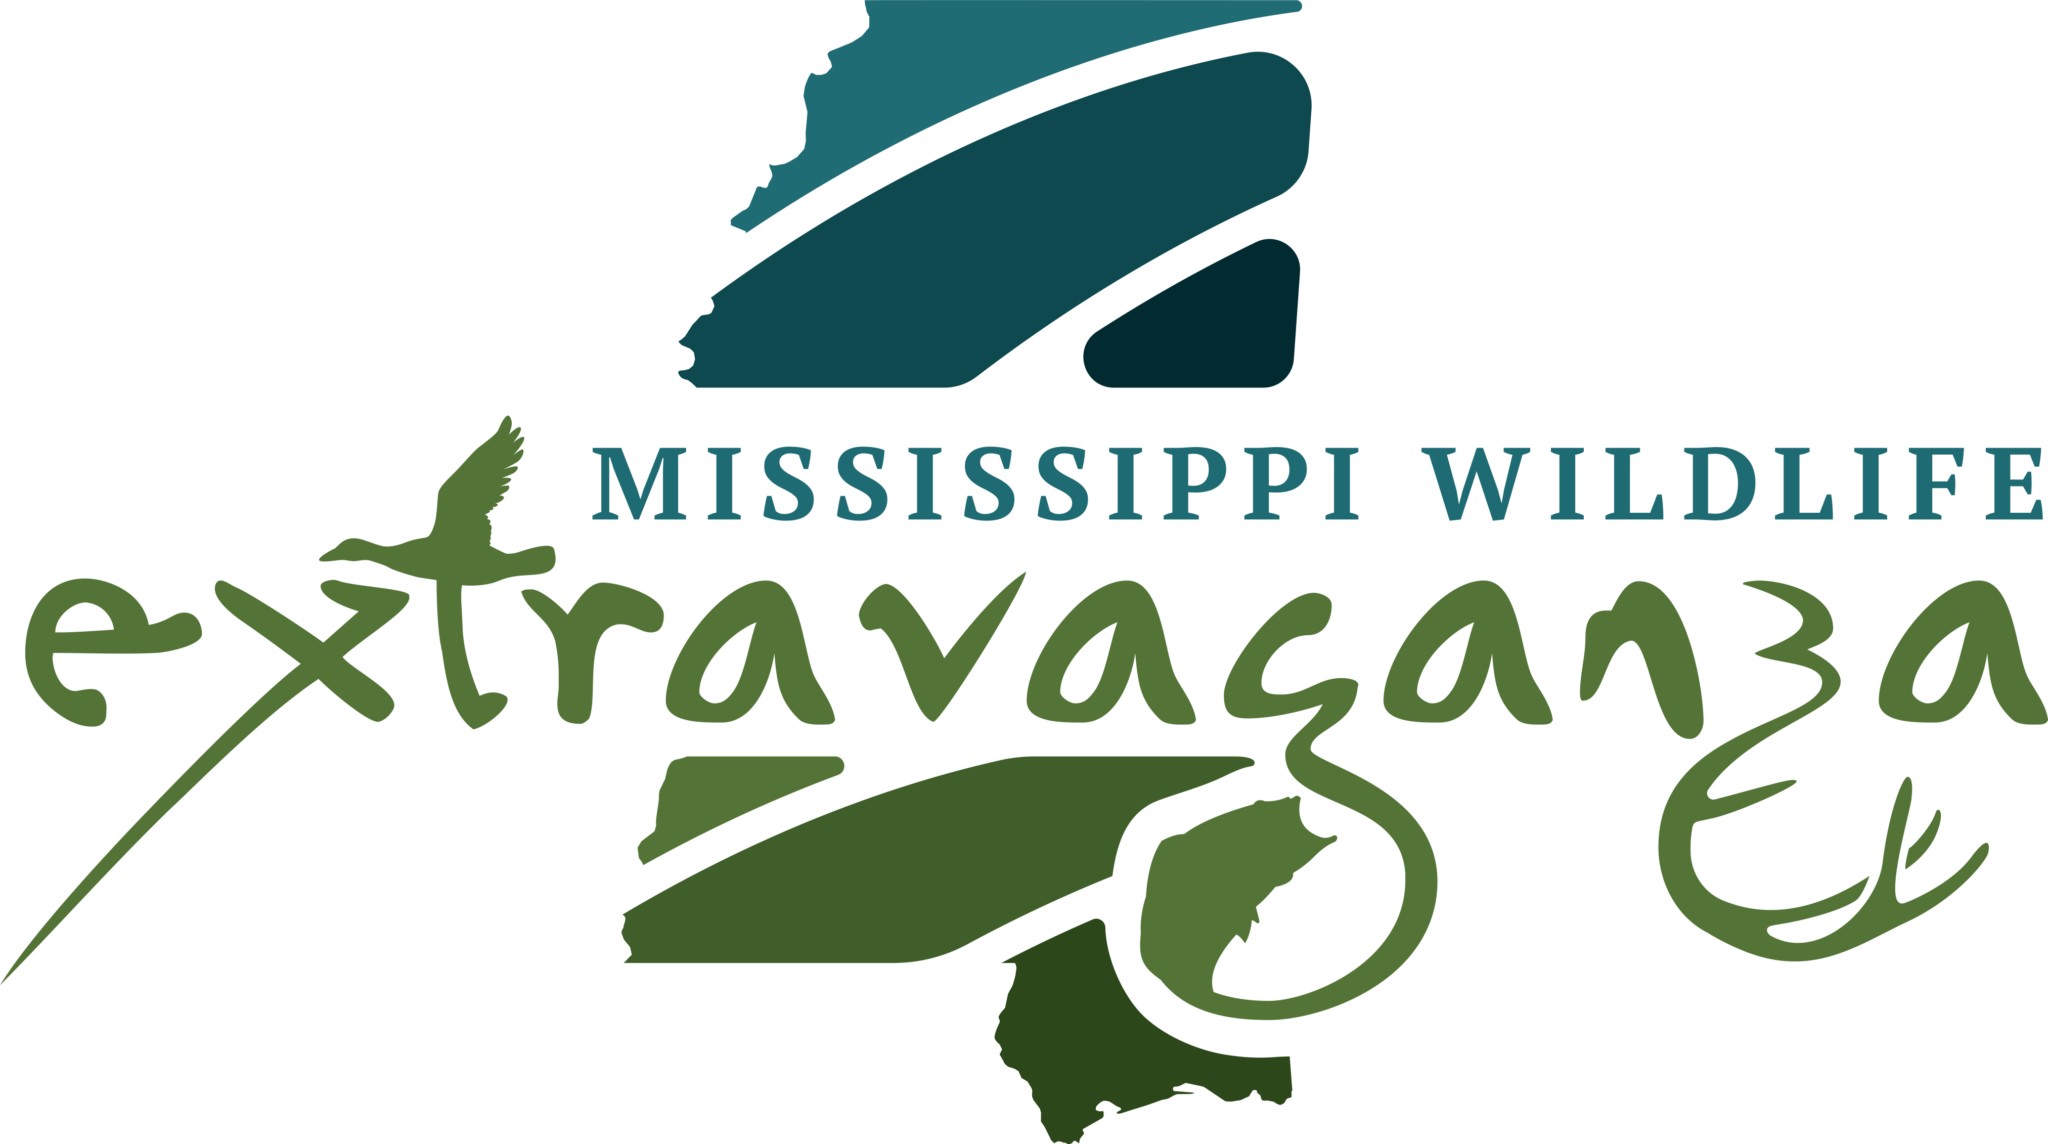 Extravaganza Mississippi Wildlife Federation